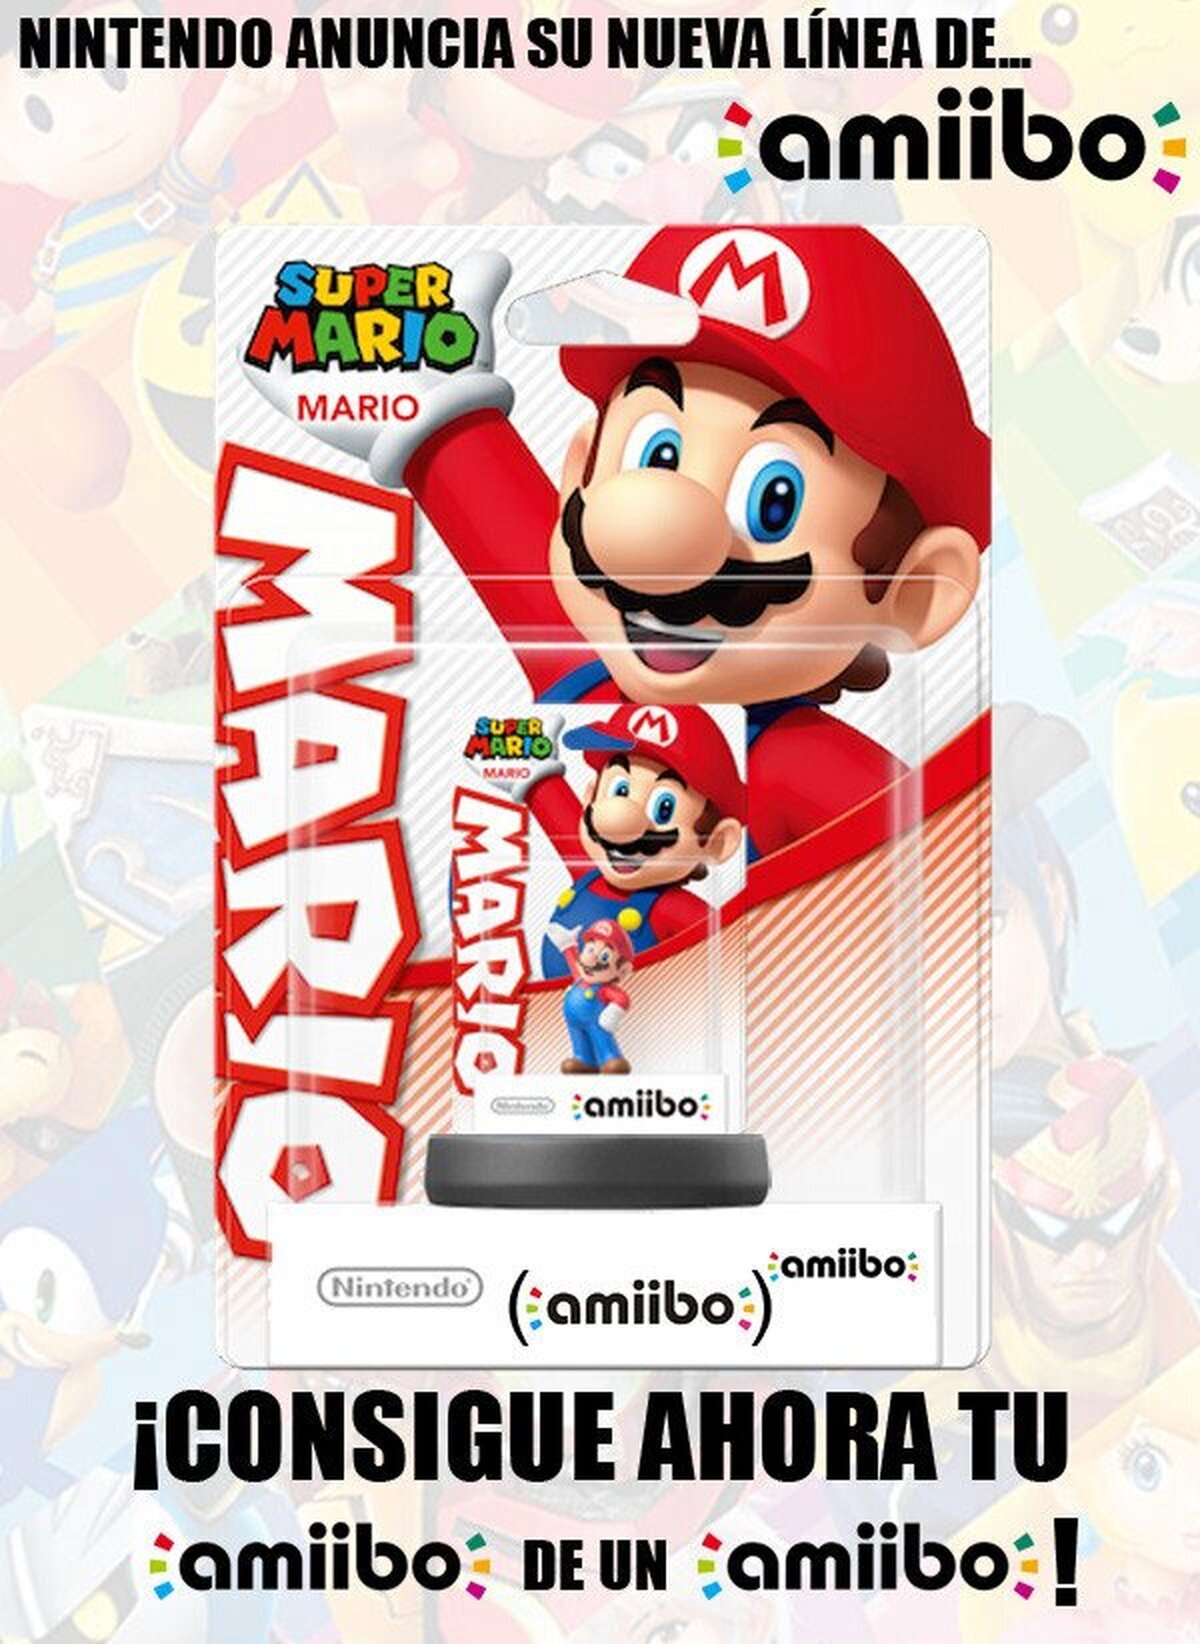 El siguiente paso en la línea de Amiibos de Nintendo será...